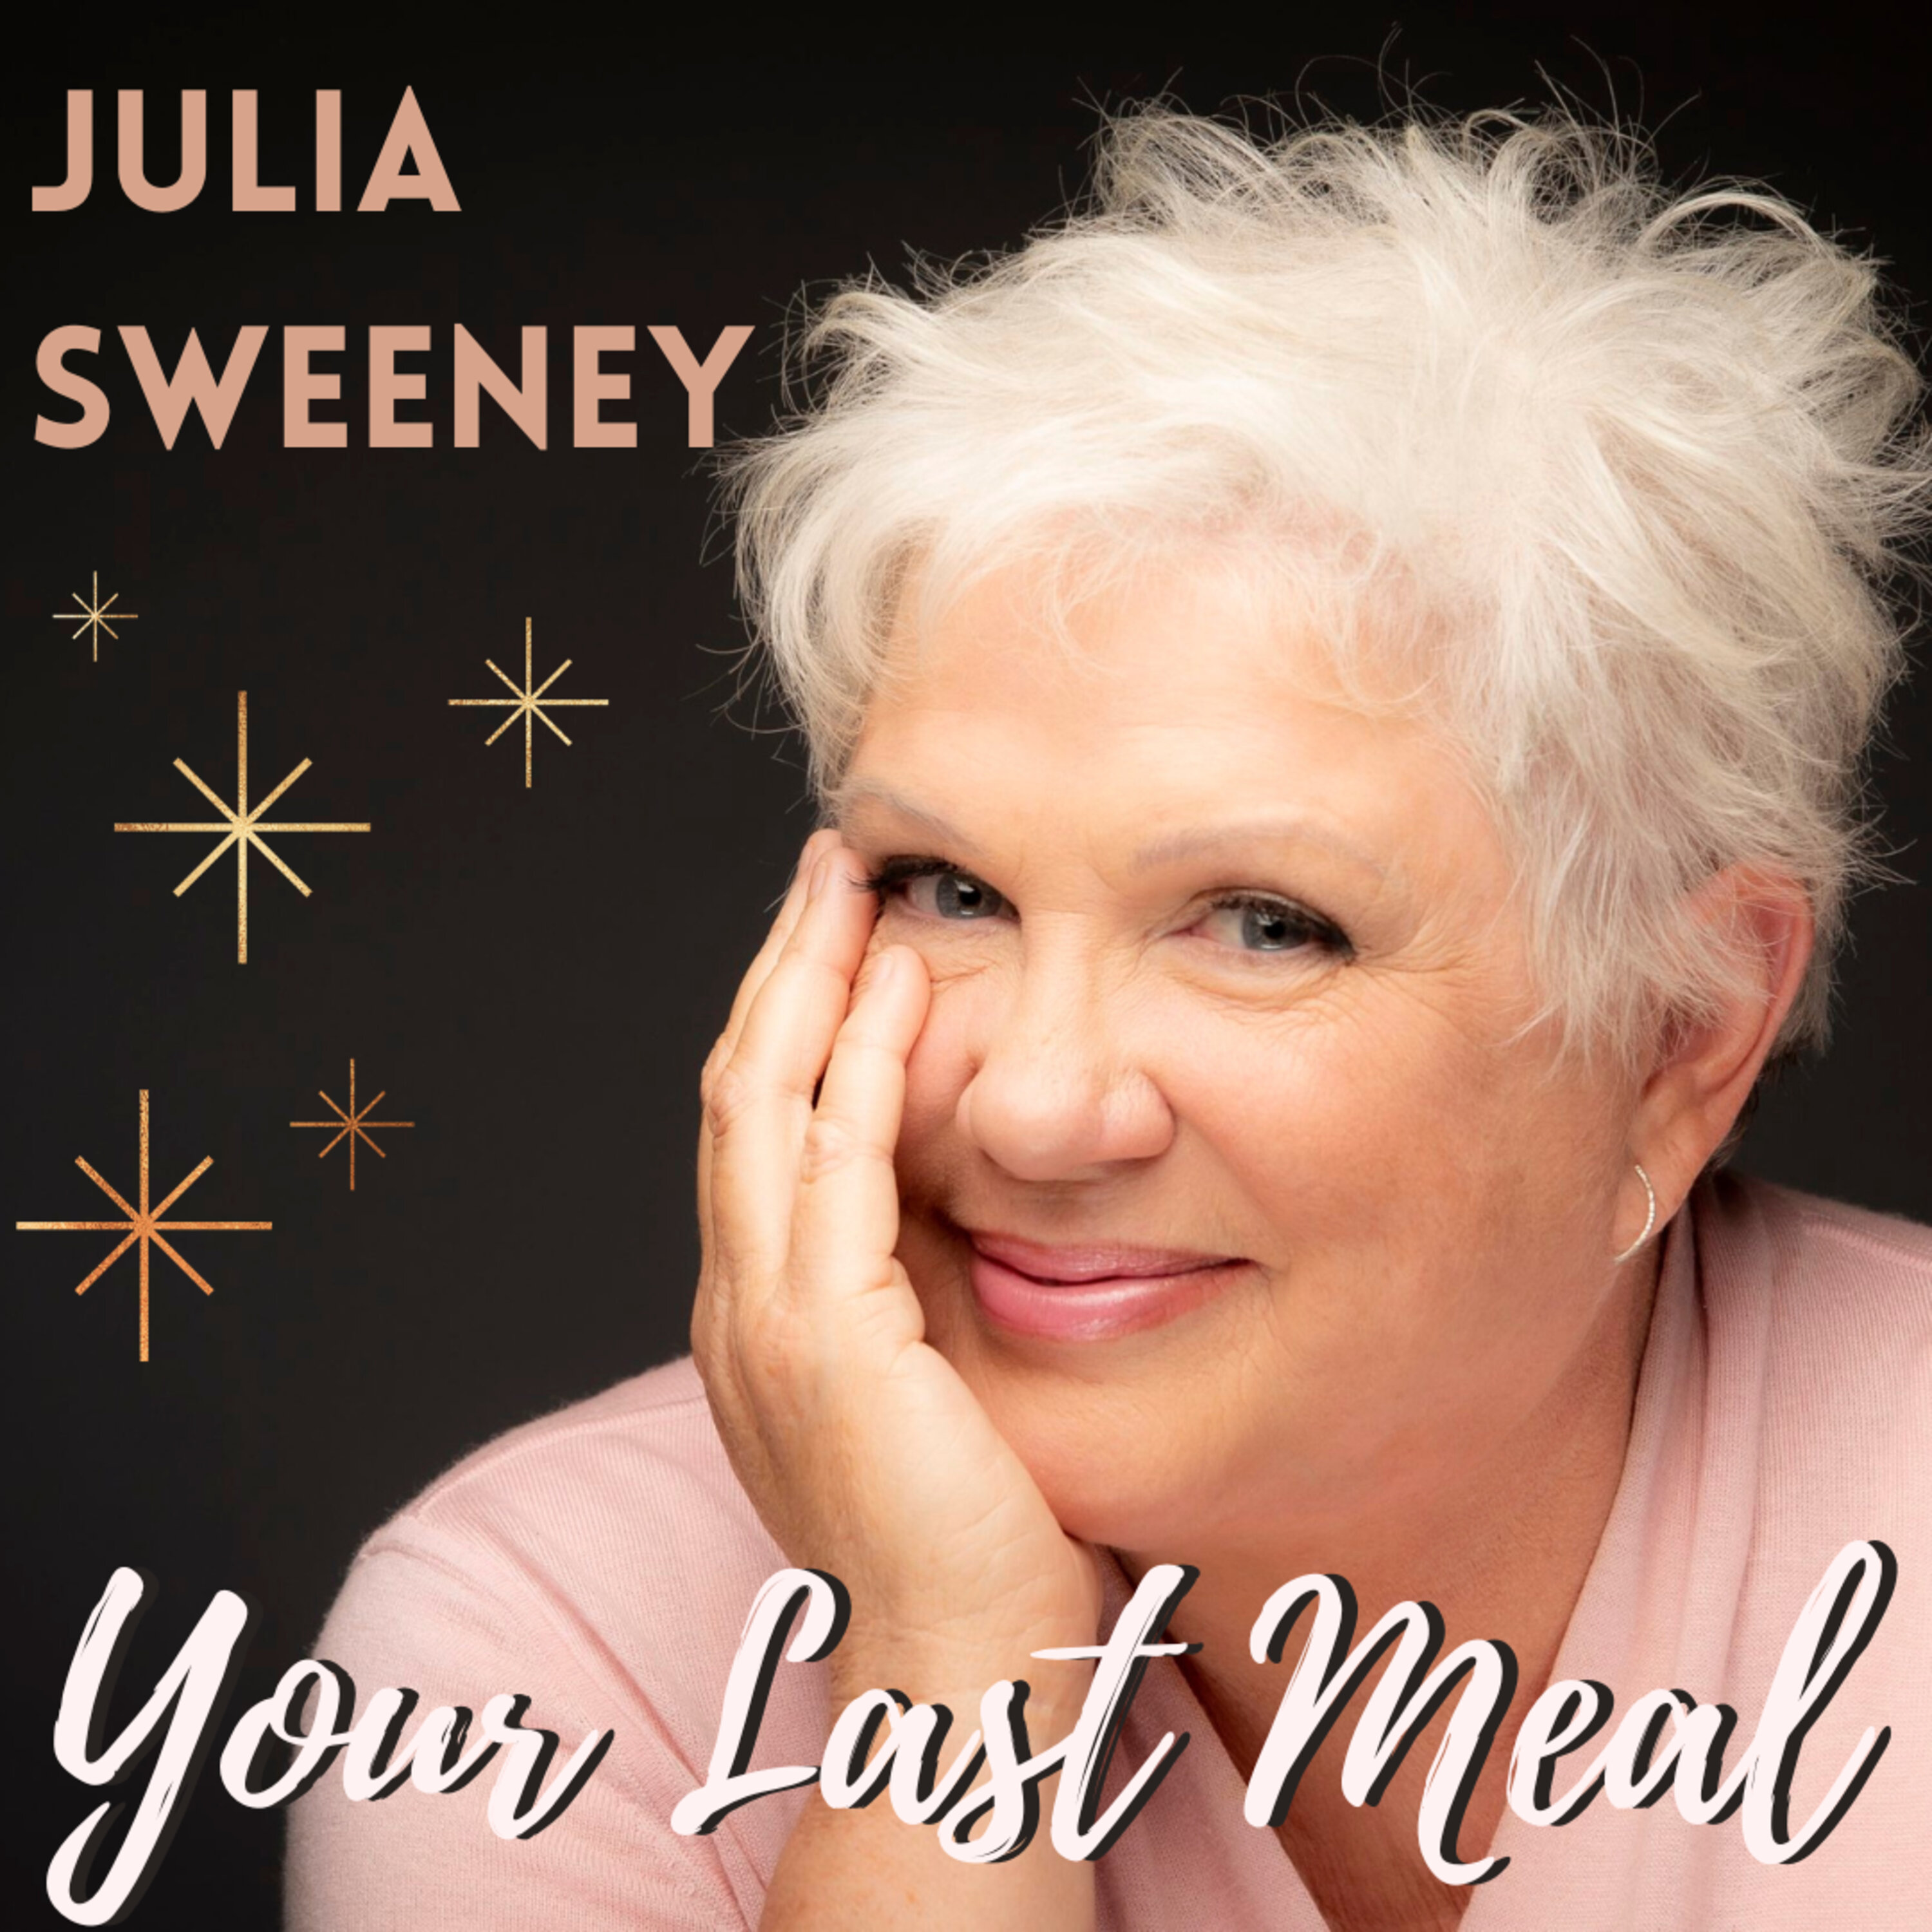 Best of Julia Sweeney: Nanaimo Bars